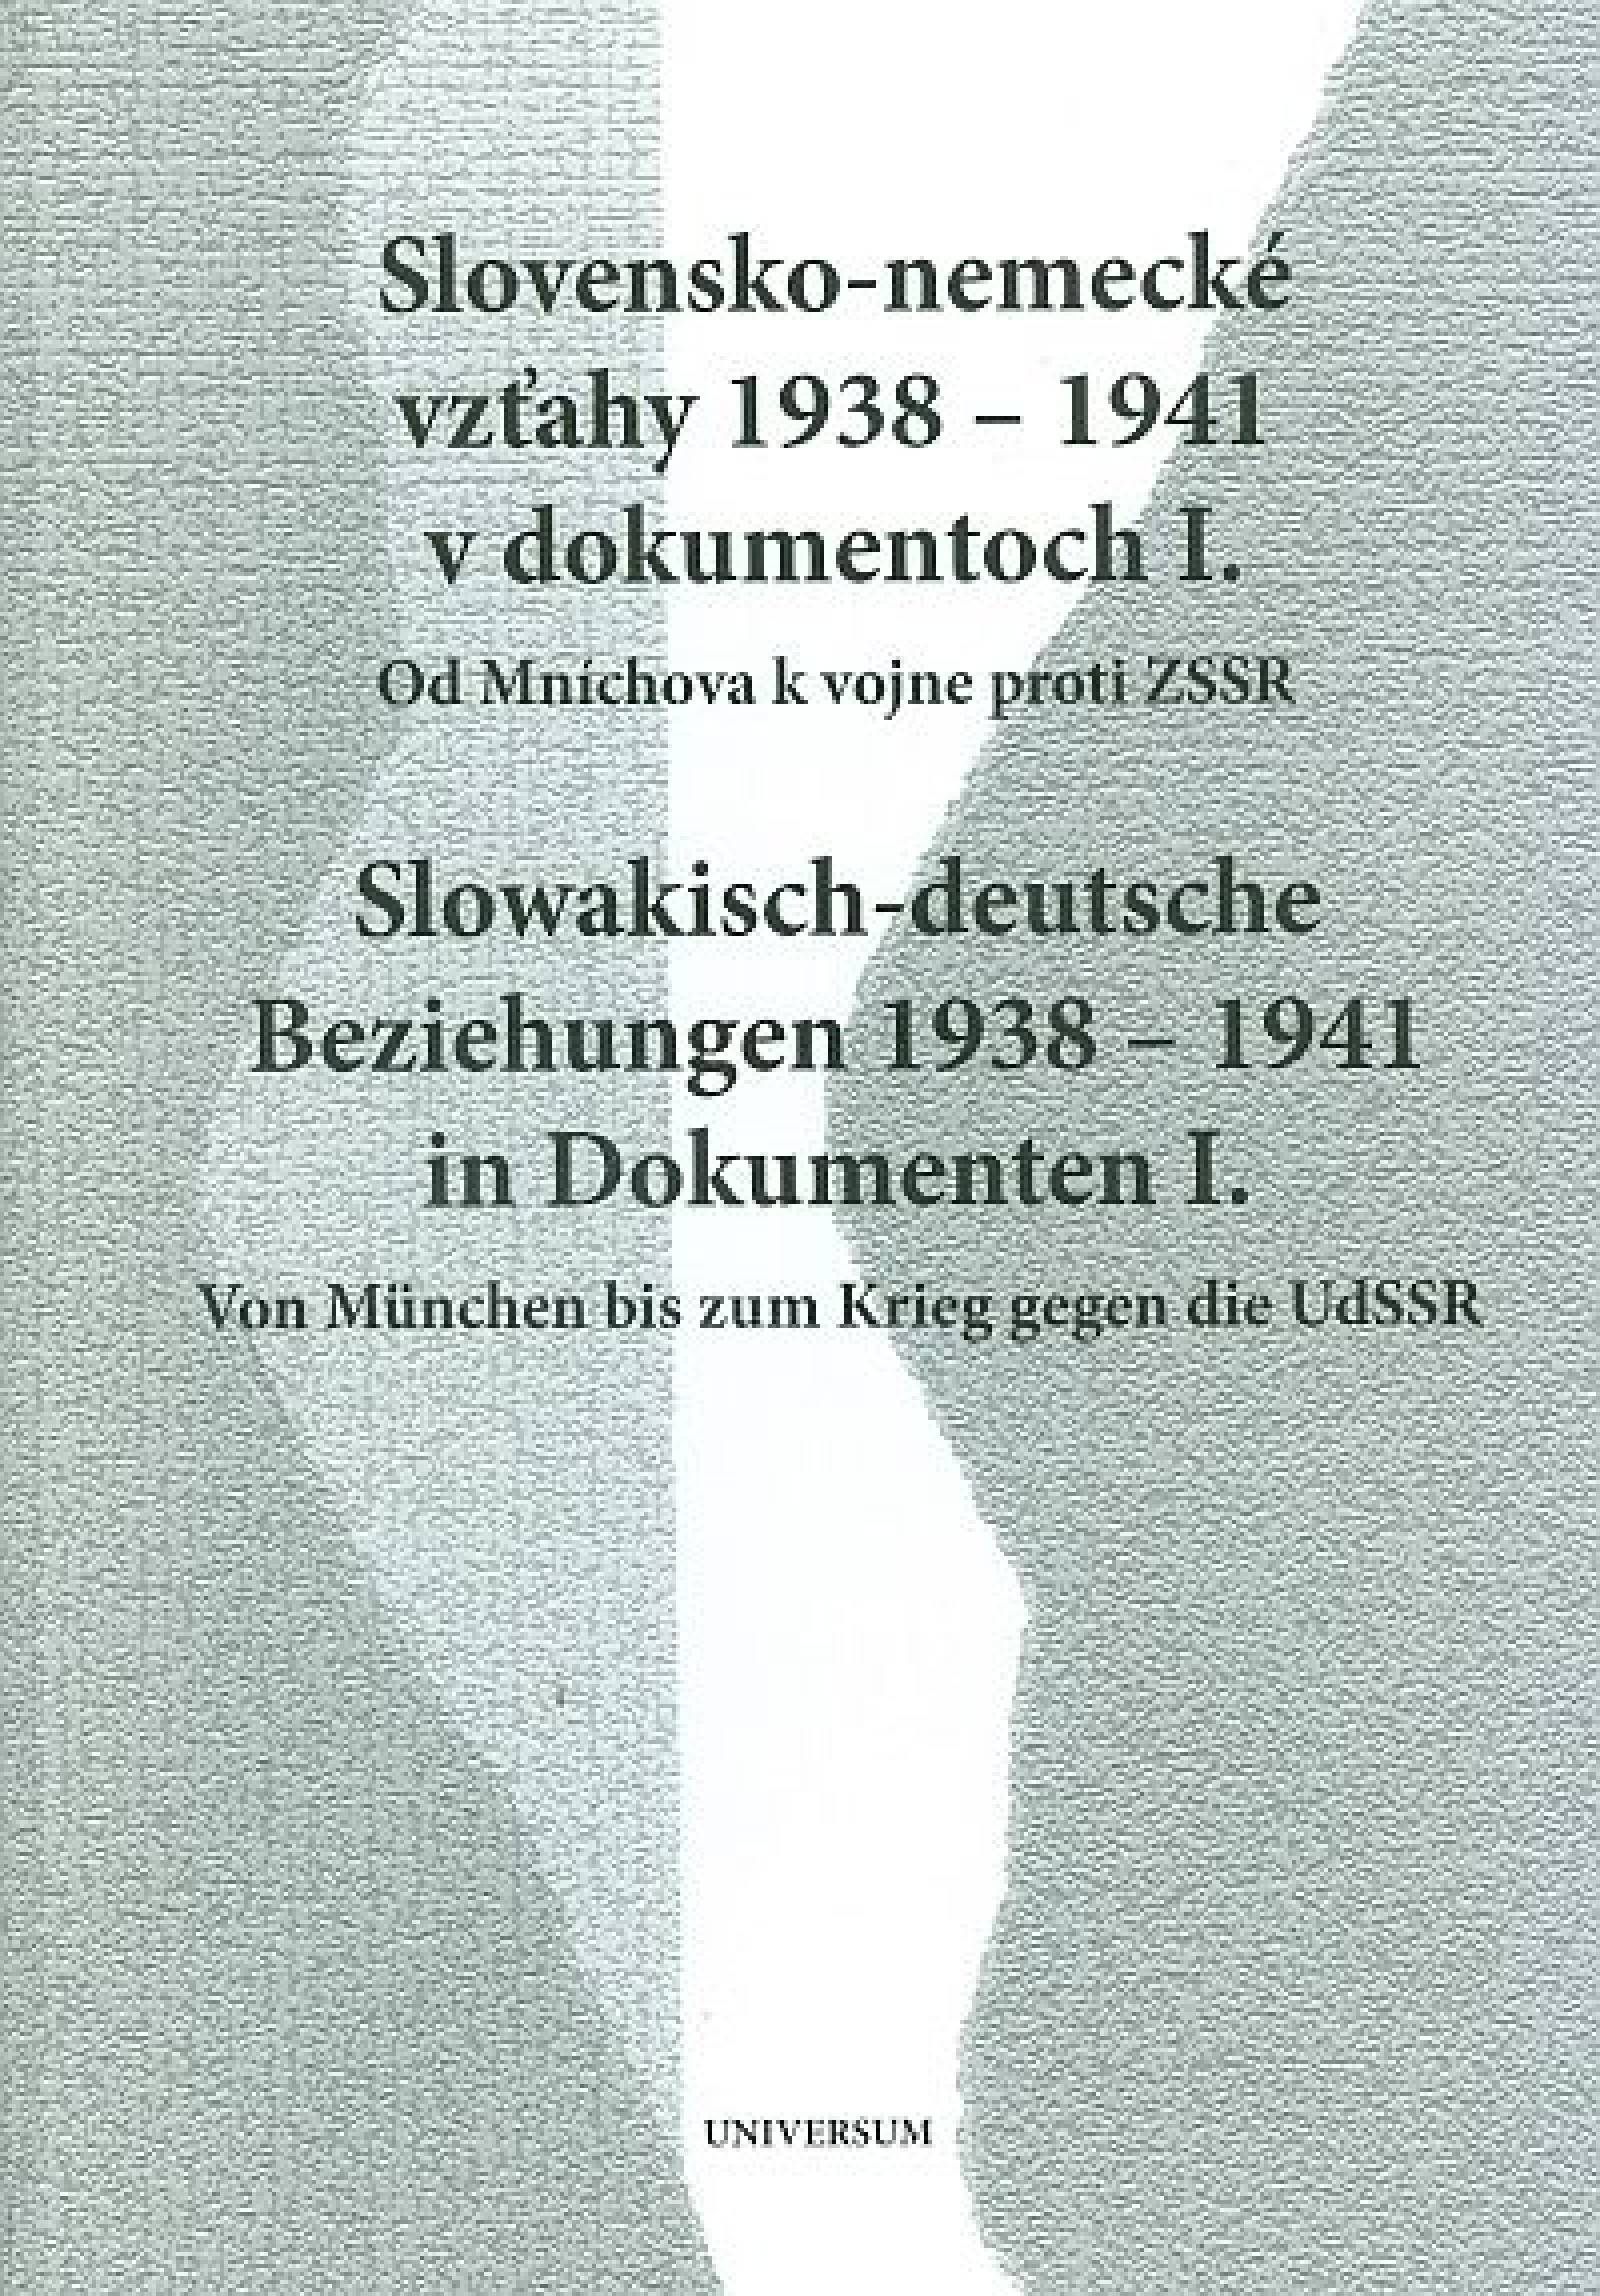 Slovensko-nemecké vzťahy 1938 - 1941 (Slowakisch-deutsche Beziehungen)